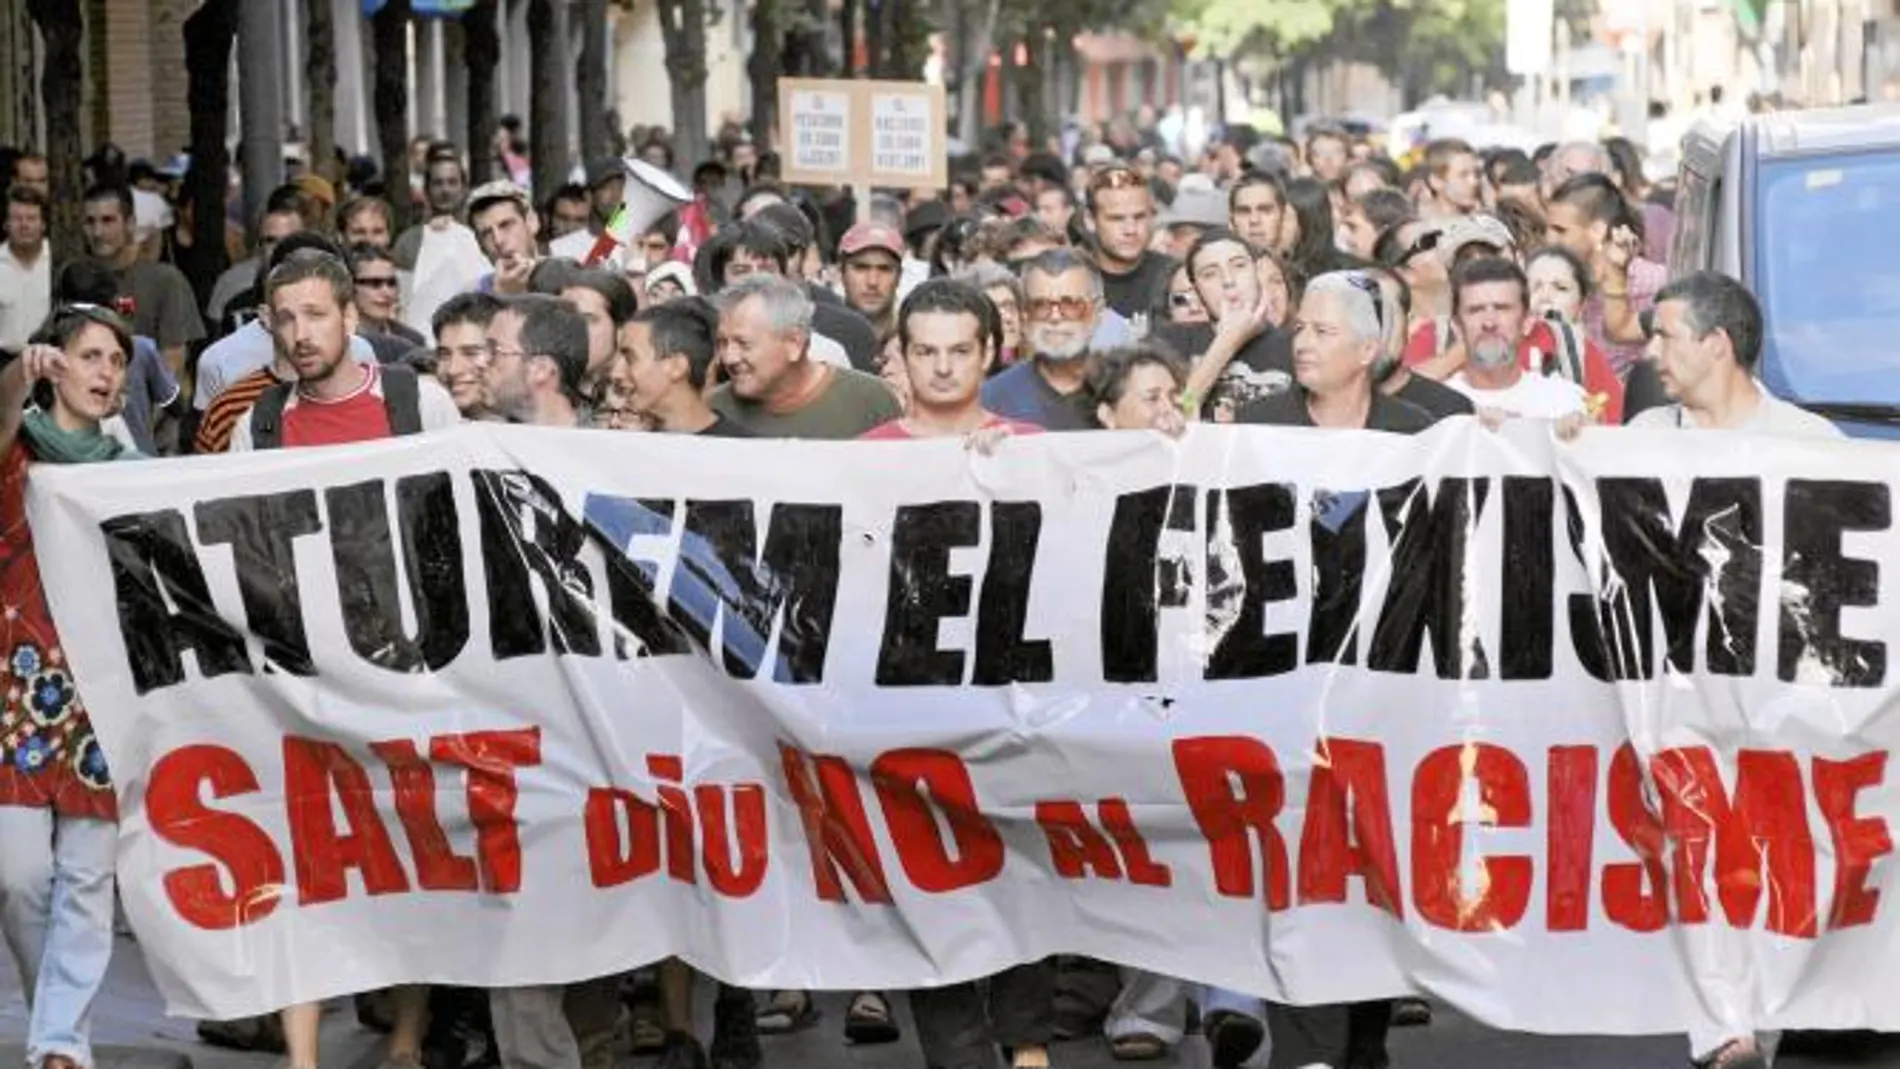 Los manifestantes mostraron pancartas contra el racismo y el fascismo